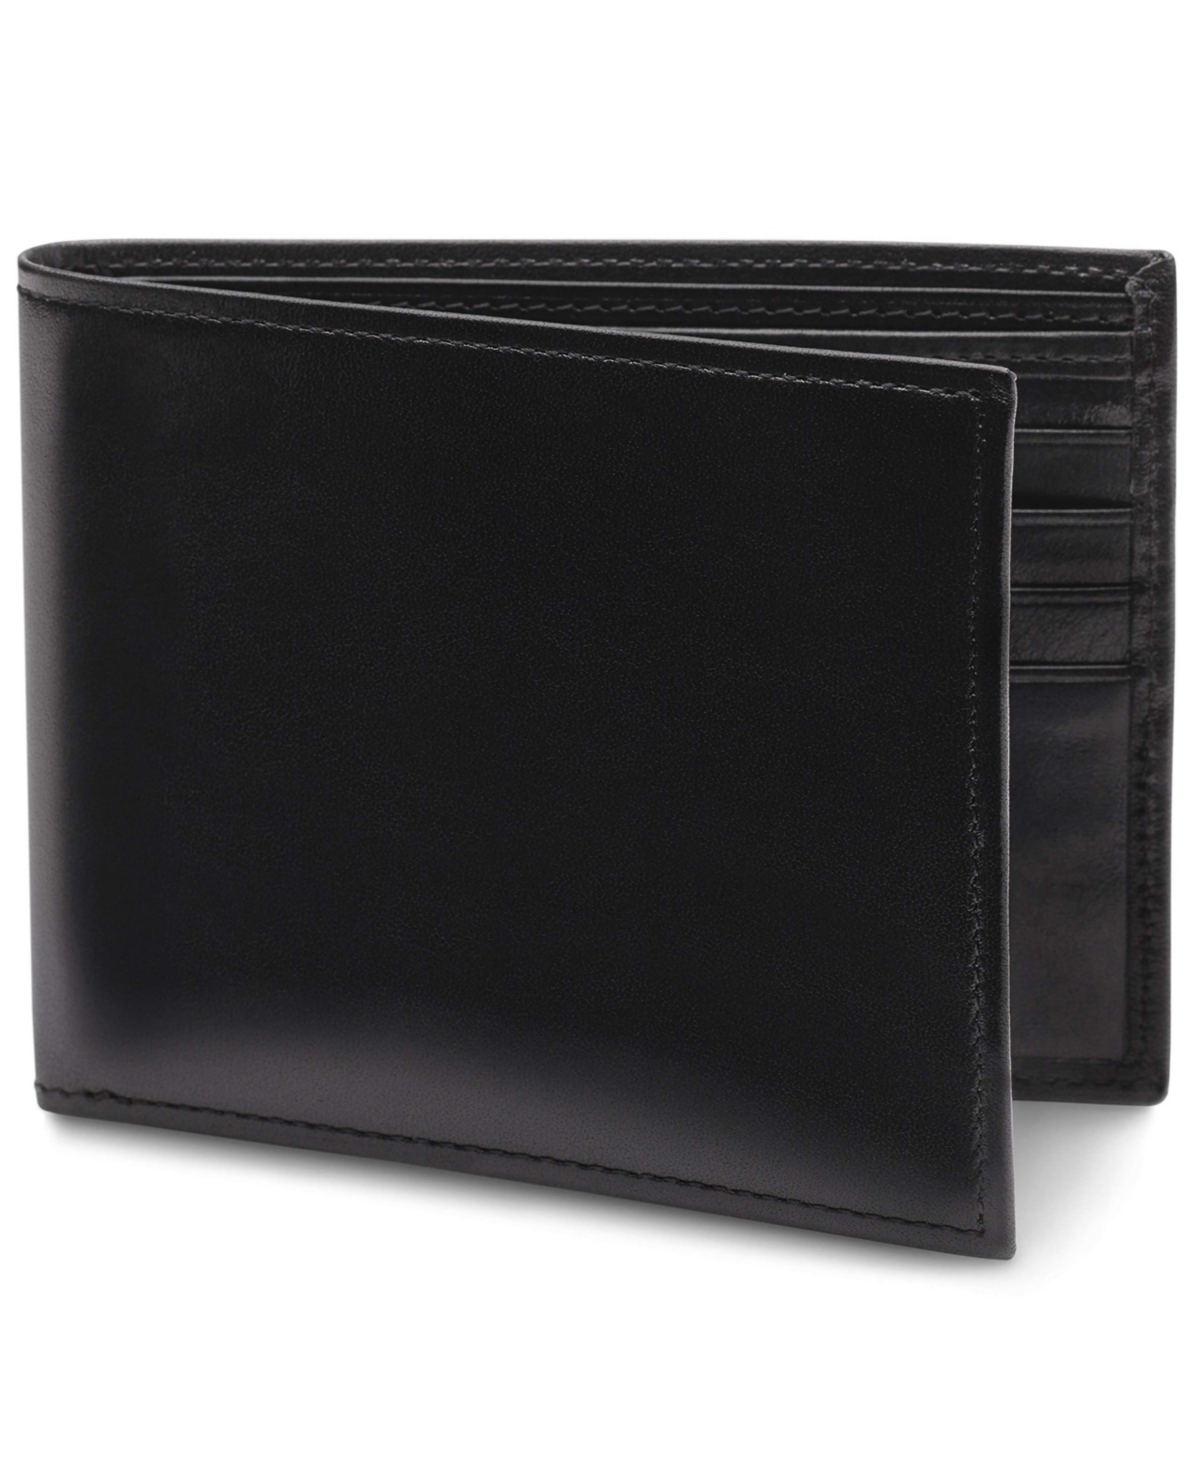 Men's 8 Pocket Wallet in Old Leather - Rfid - Black